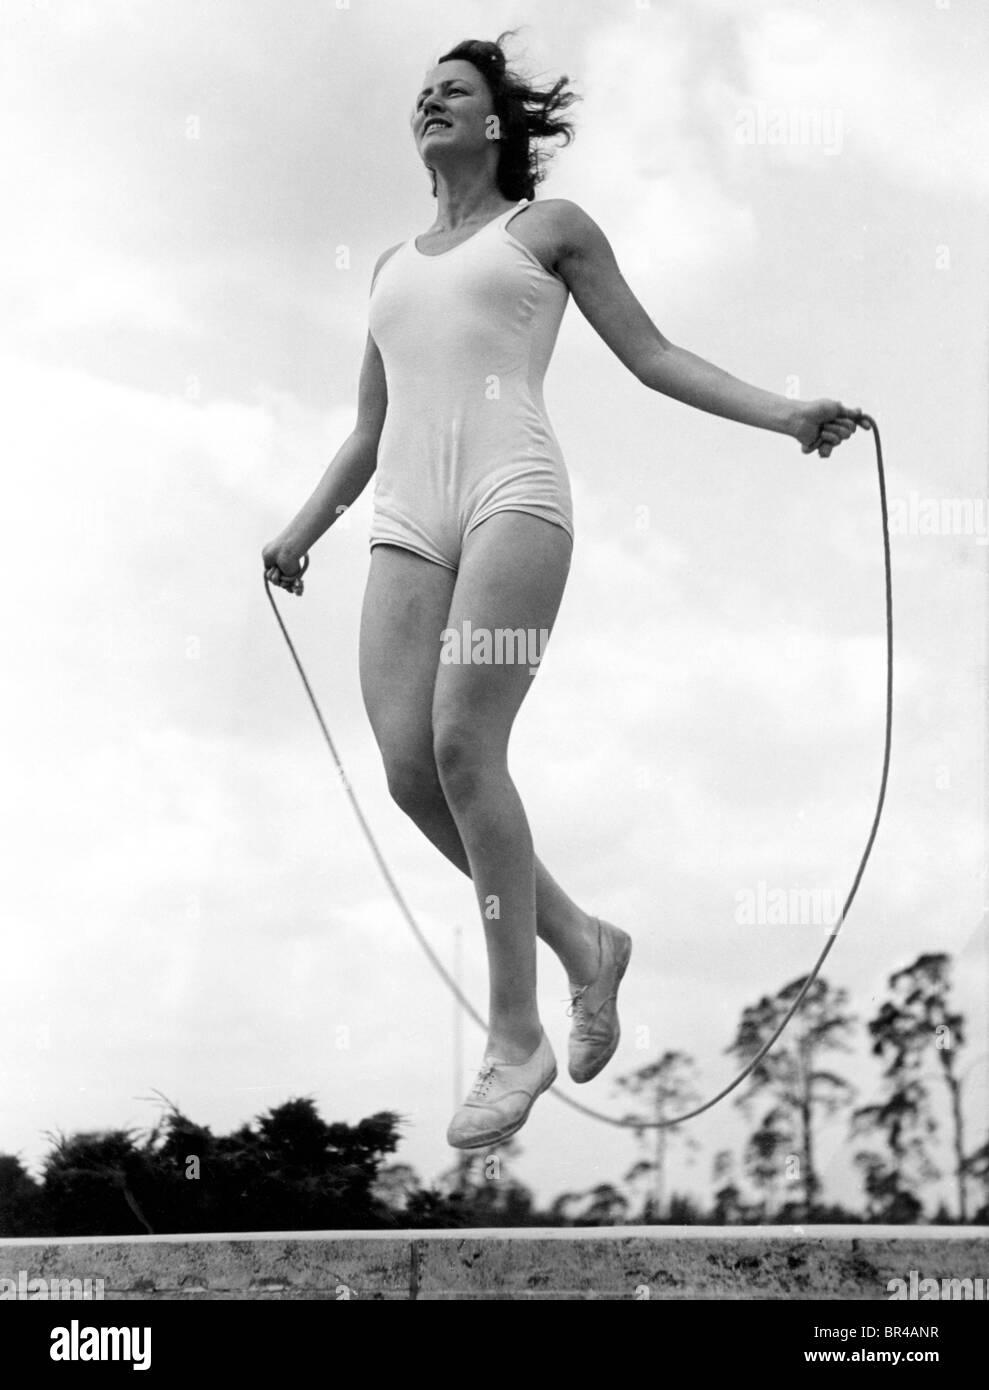 Immagine storica, donna salto con la corda, ca. 1940 Foto Stock